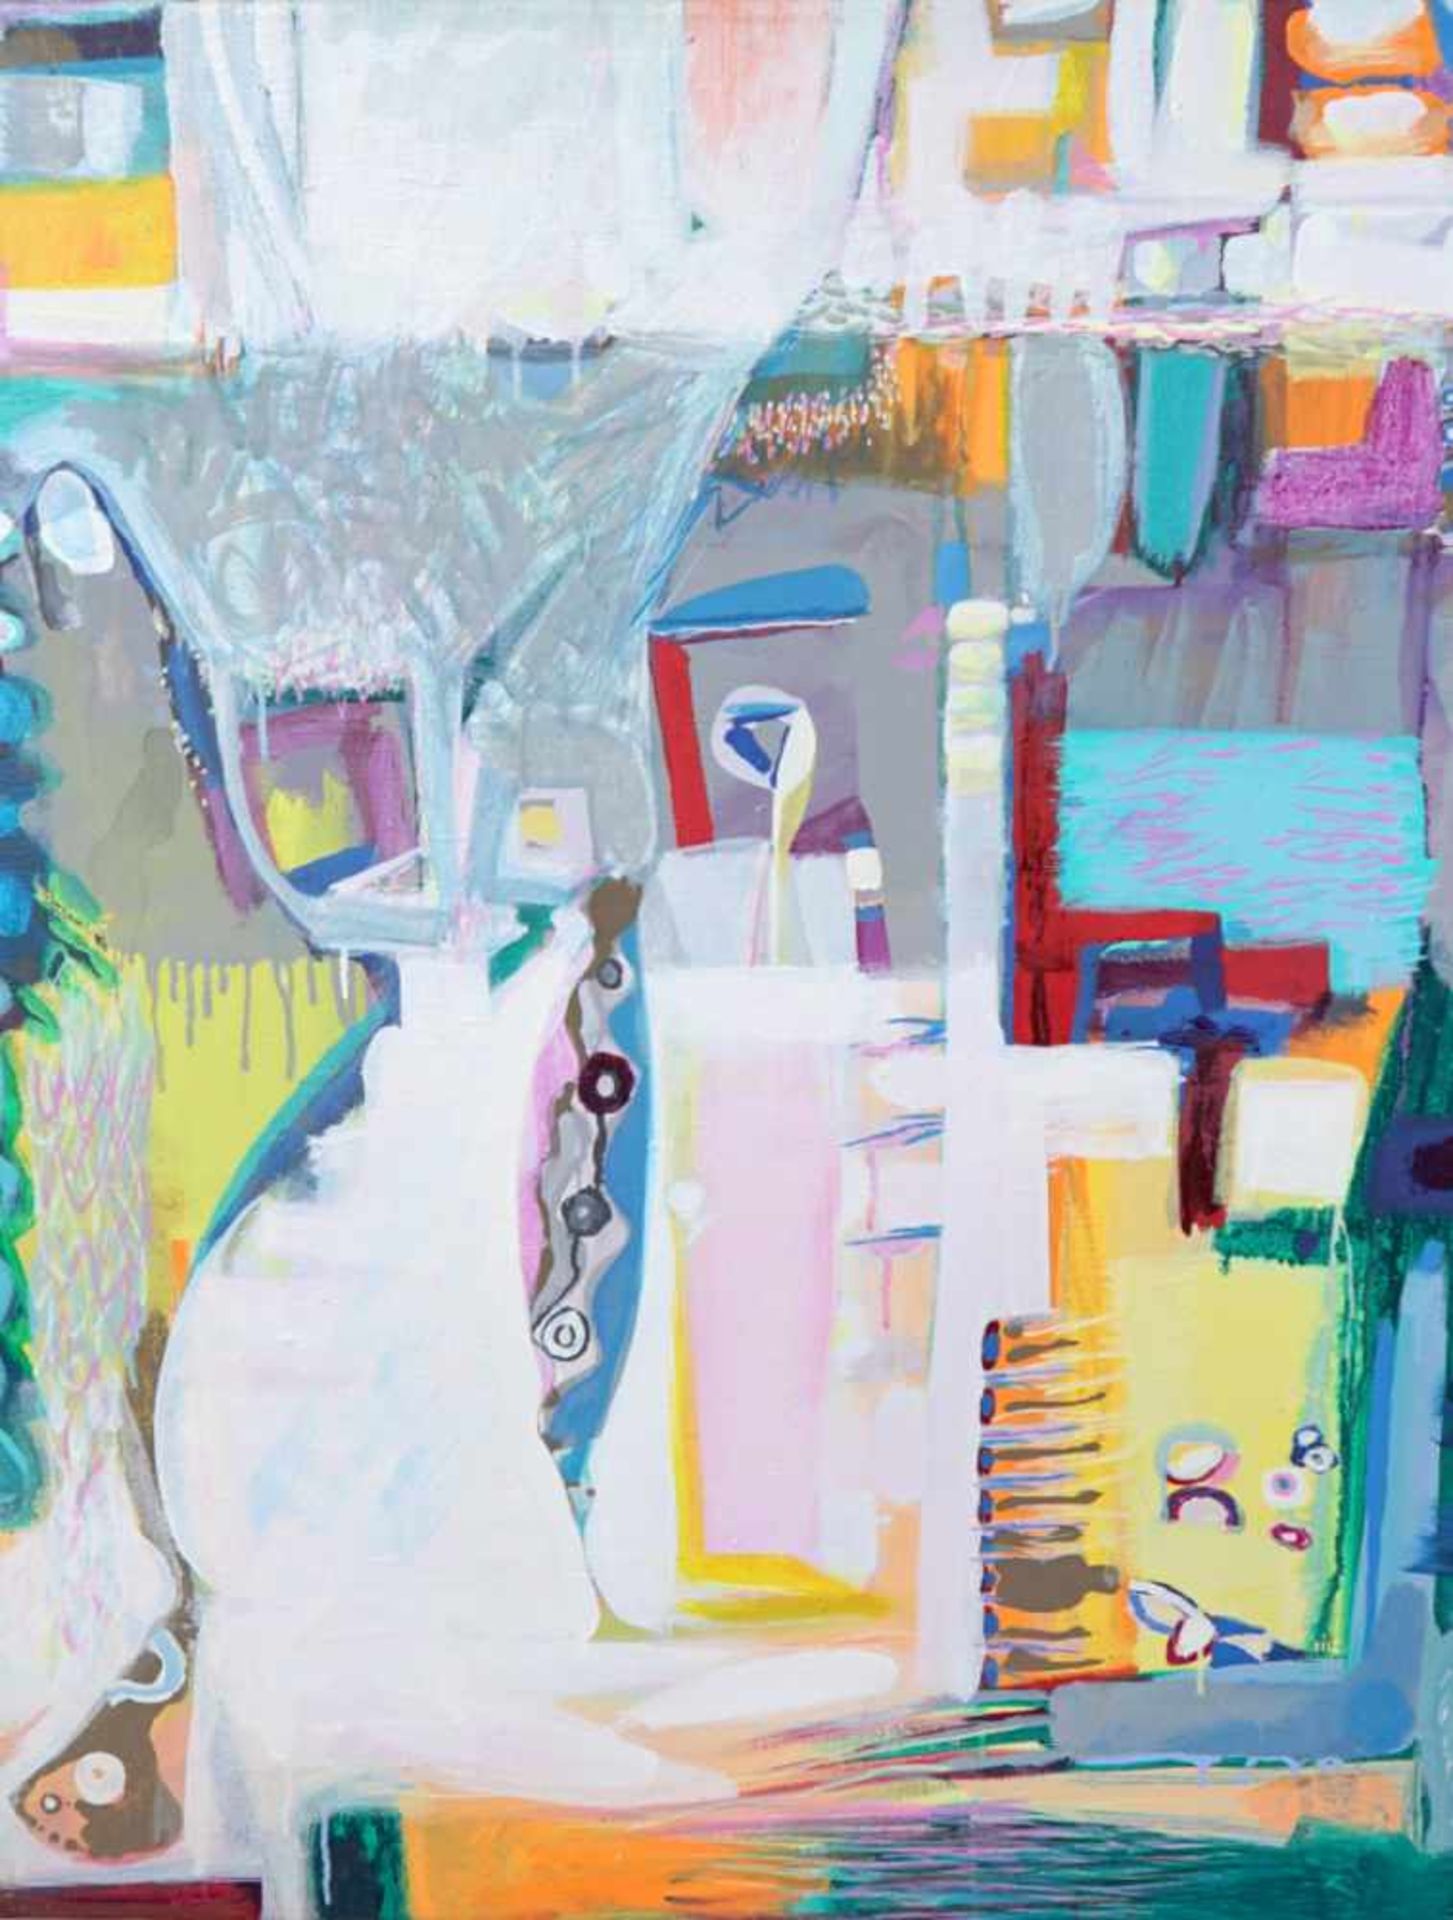 Boris Shapowalow, 1917 - 2004 RusslandAcryl/Leinwand. Moderne Komposition aus farbigen Flächen und